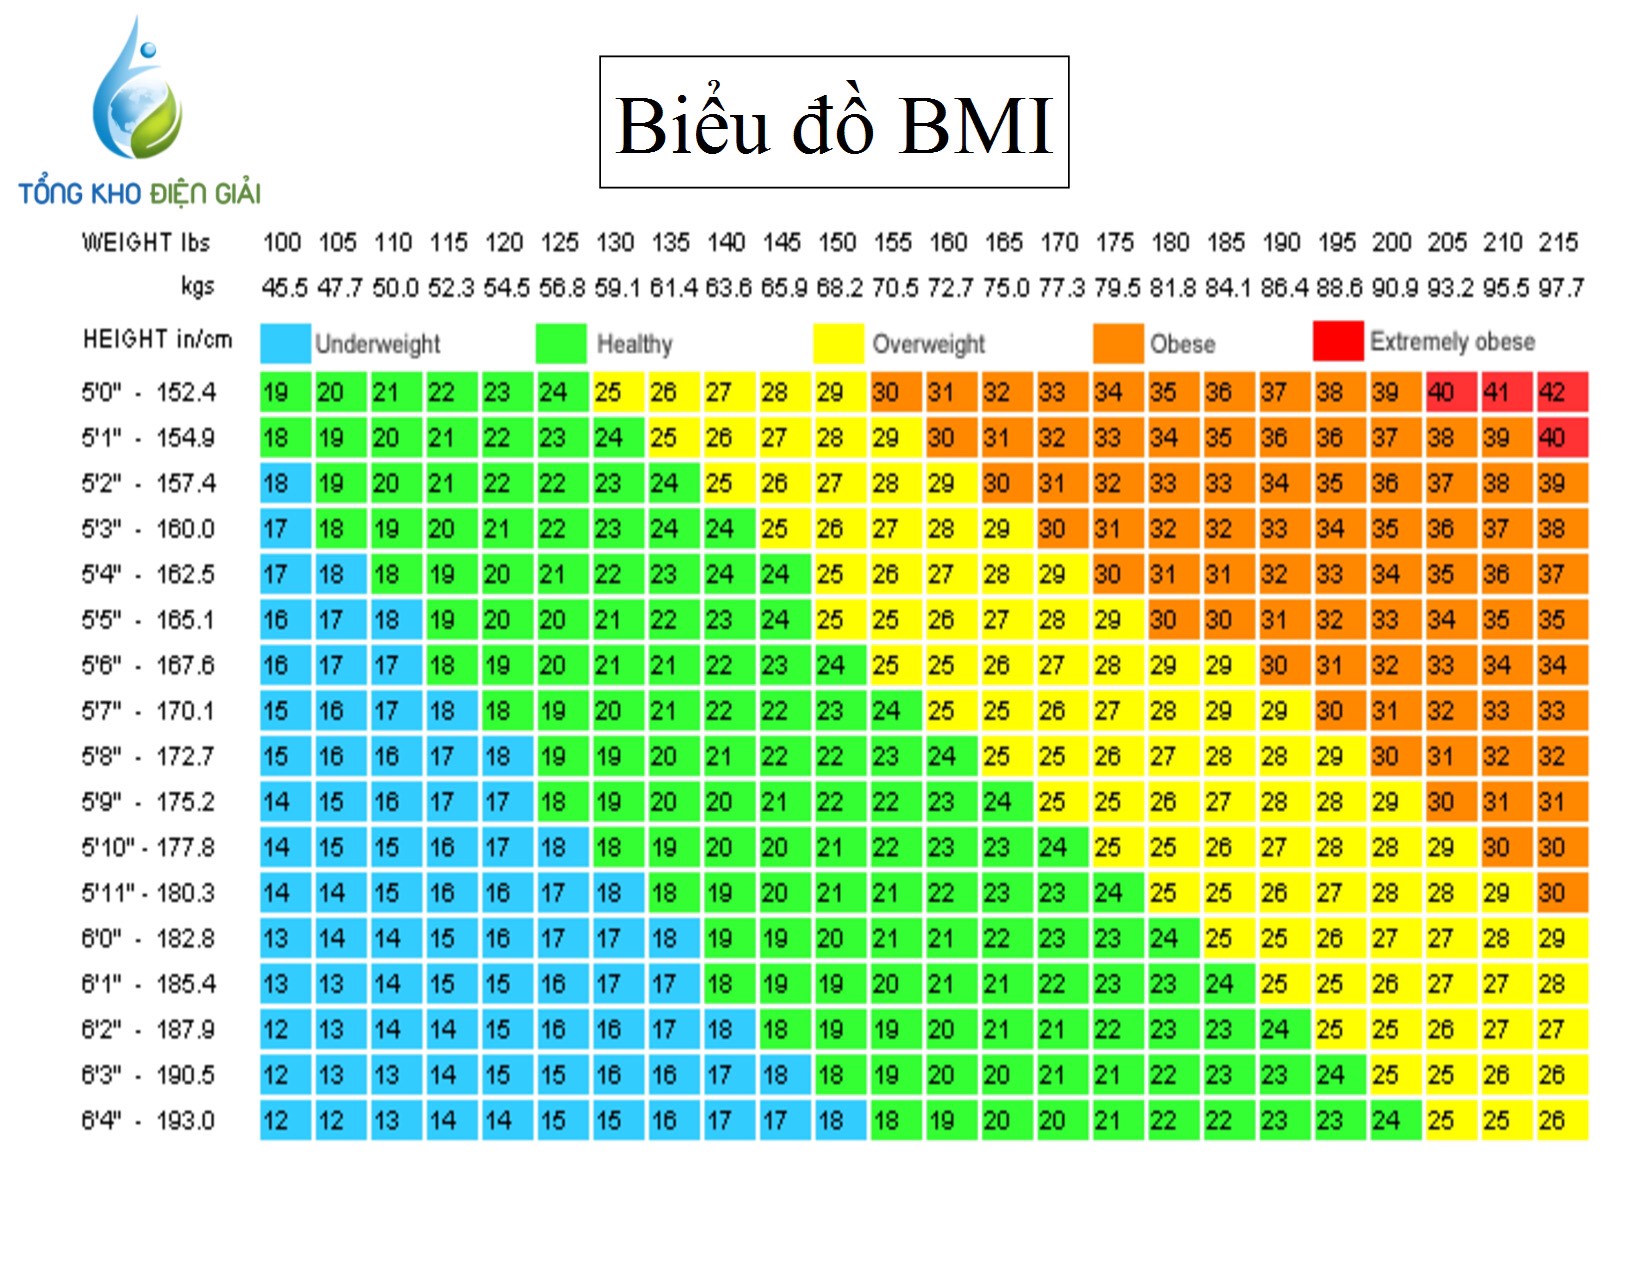 Chỉ số BMI của nam chuẩn